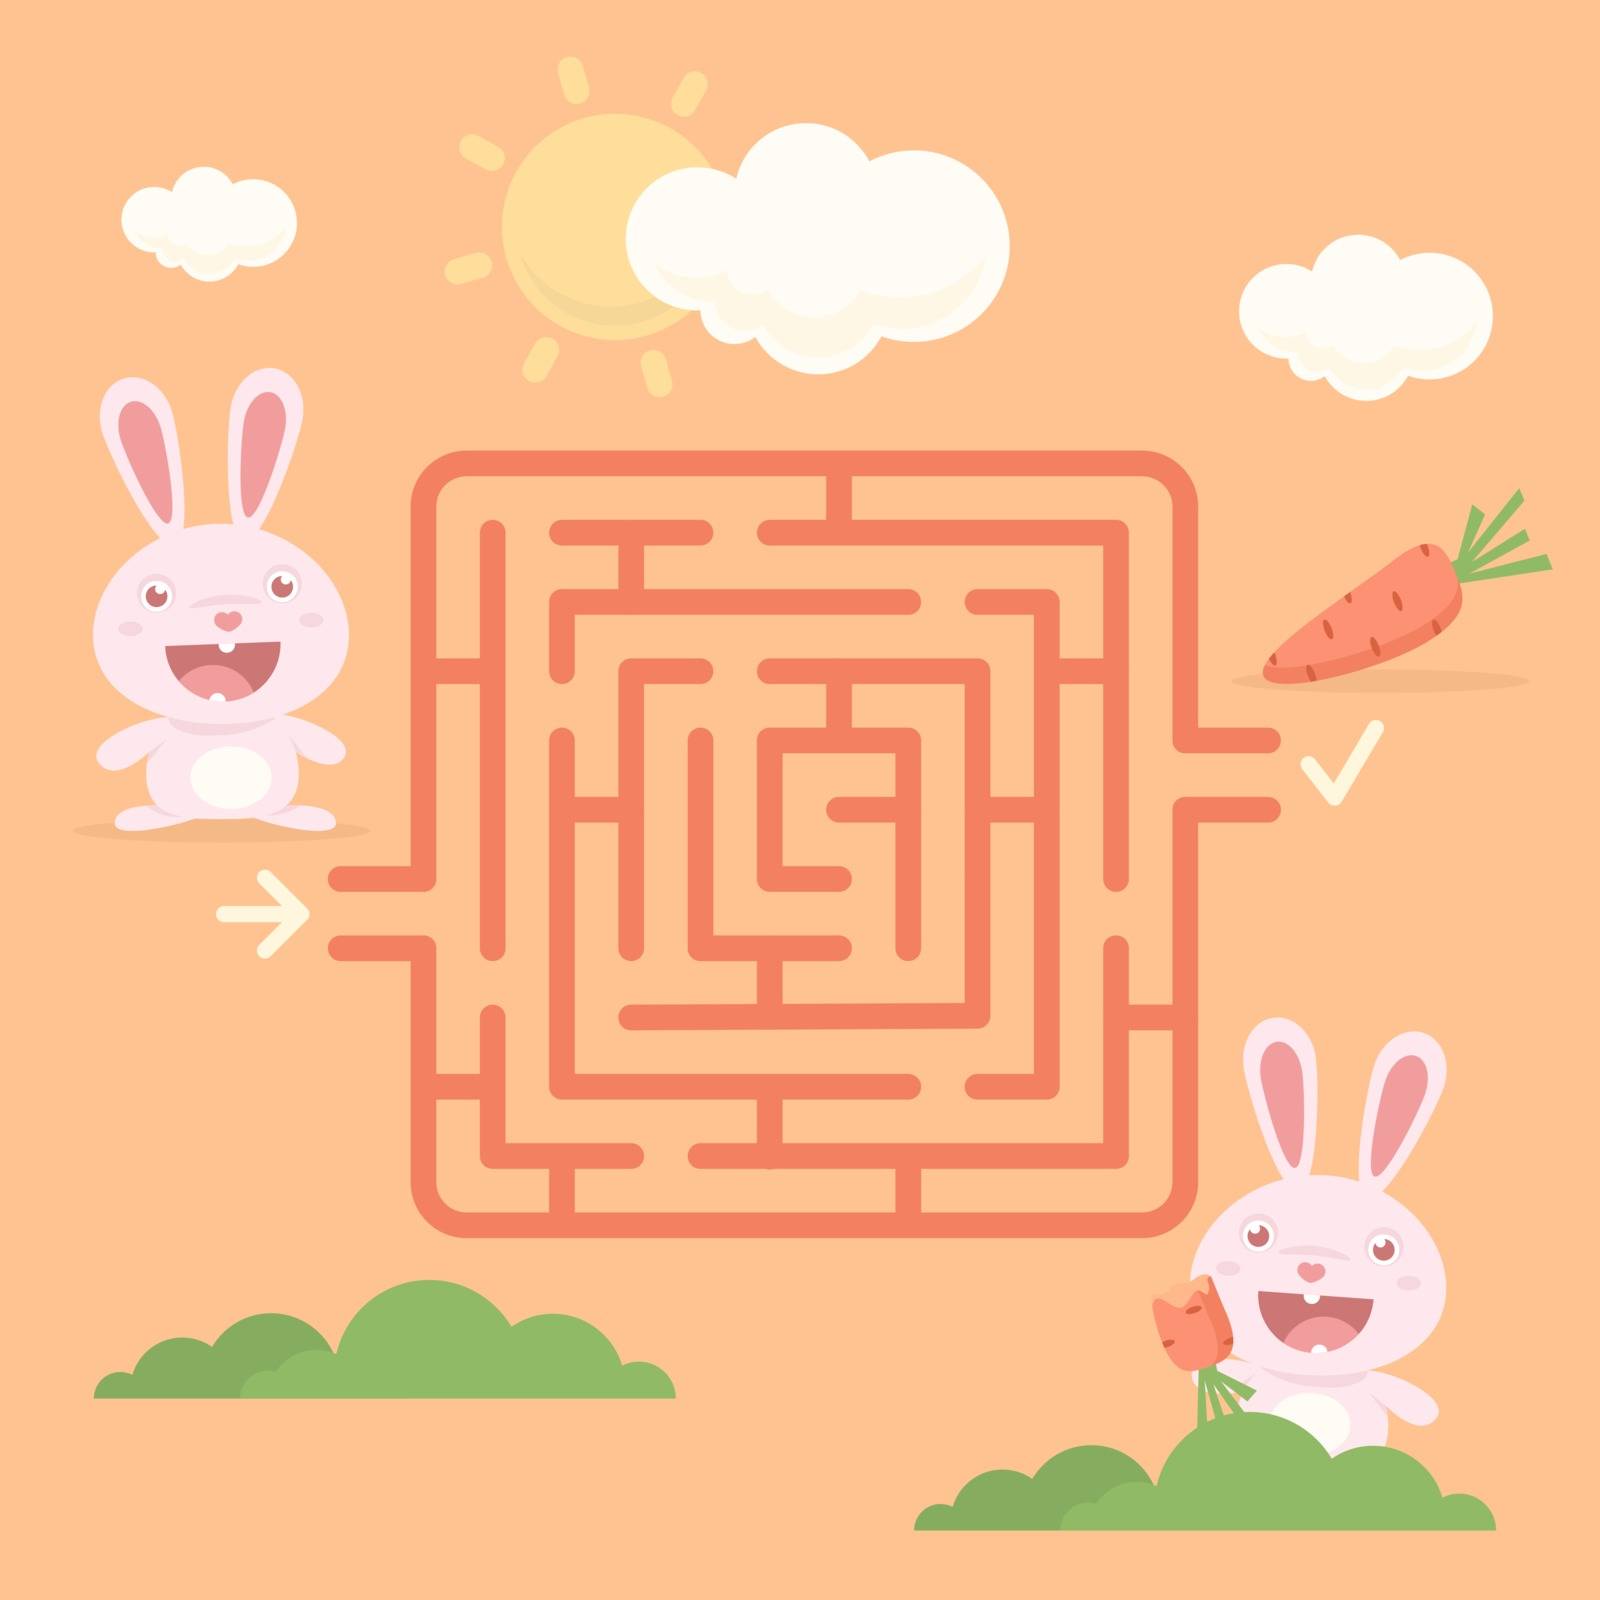 Labyrinth rabbit with carrot by yuriytsirkunov